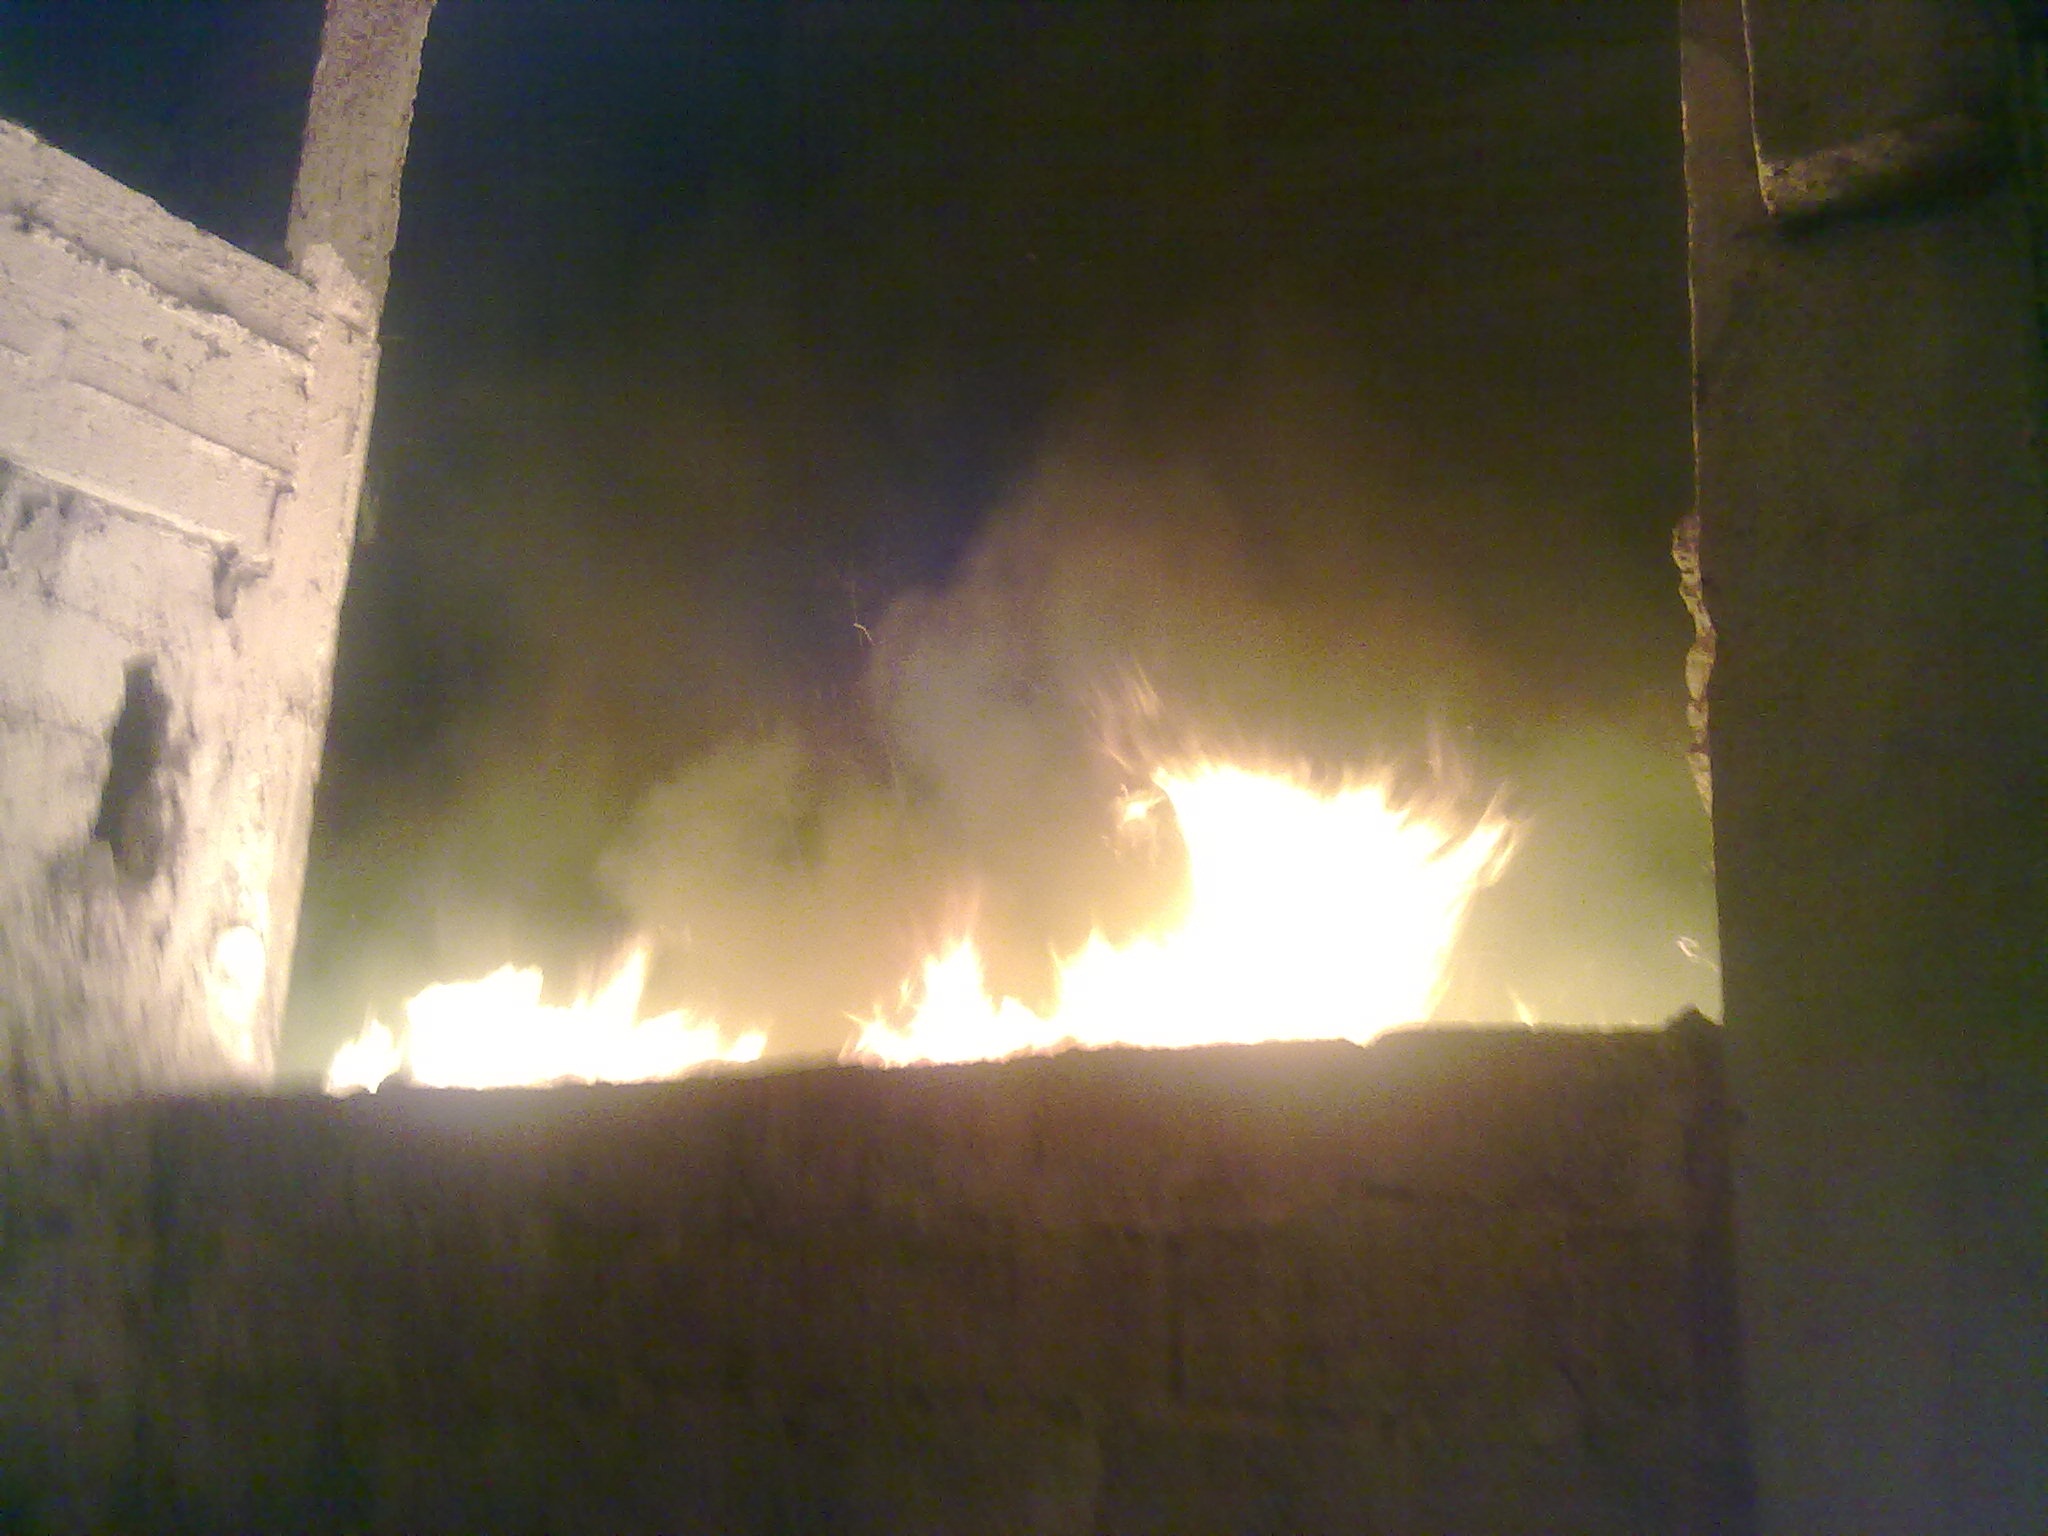 أزمور:نشوب حريق بأحد البقع المهجورة بالشارع العام “بالصور”